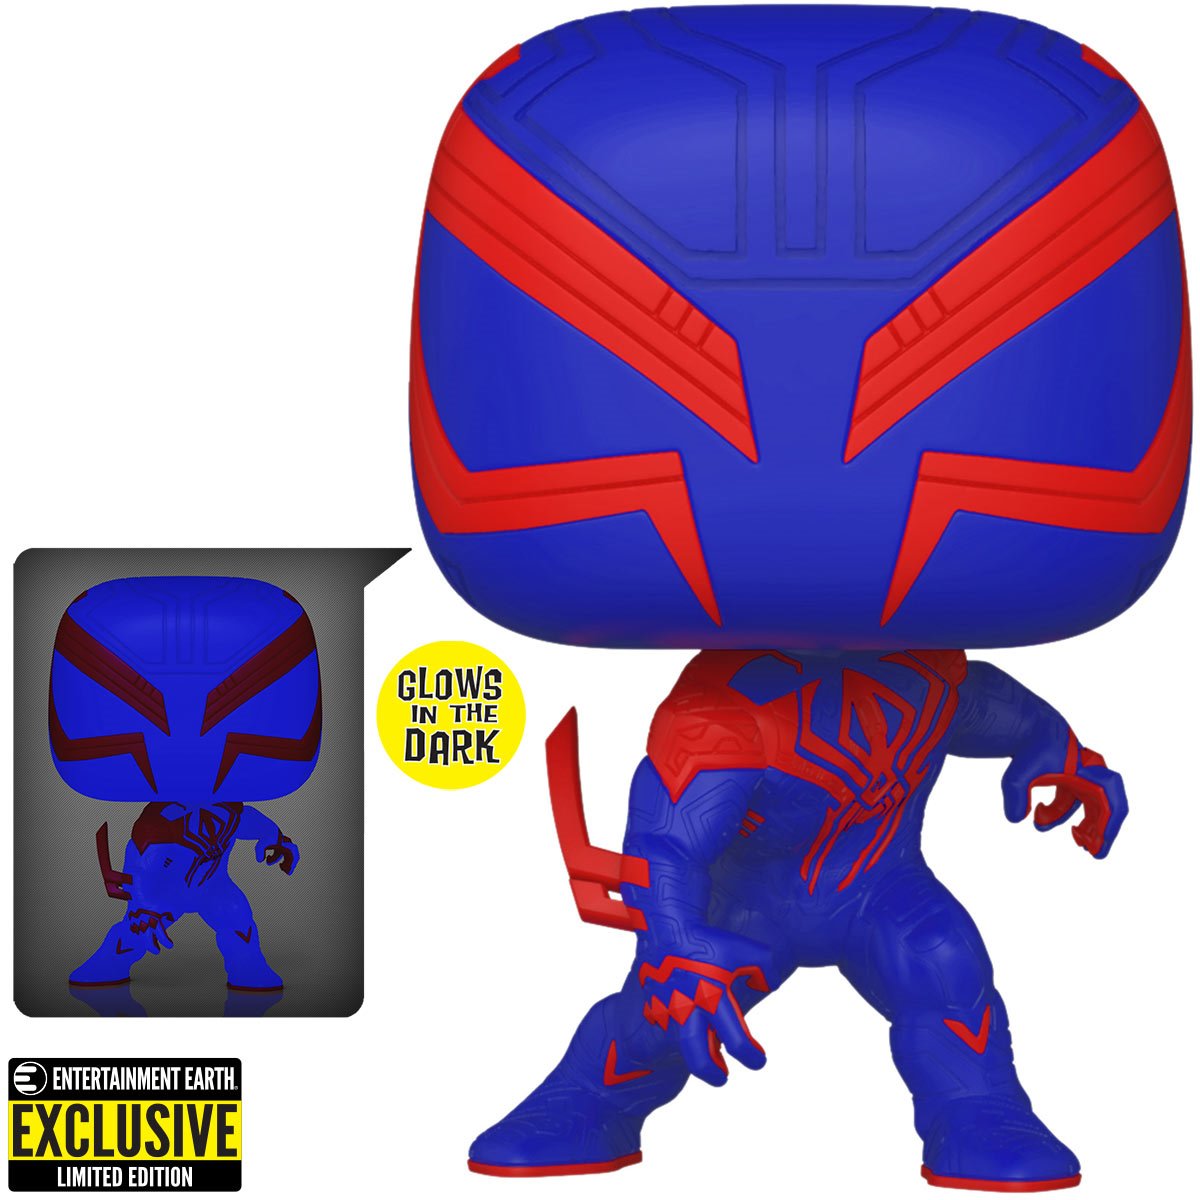 Funko Marvel Pop!: Spider-Man: Across the Spider-Verse - Spider-Man 2099 - GITD #1267 EE Exclusive